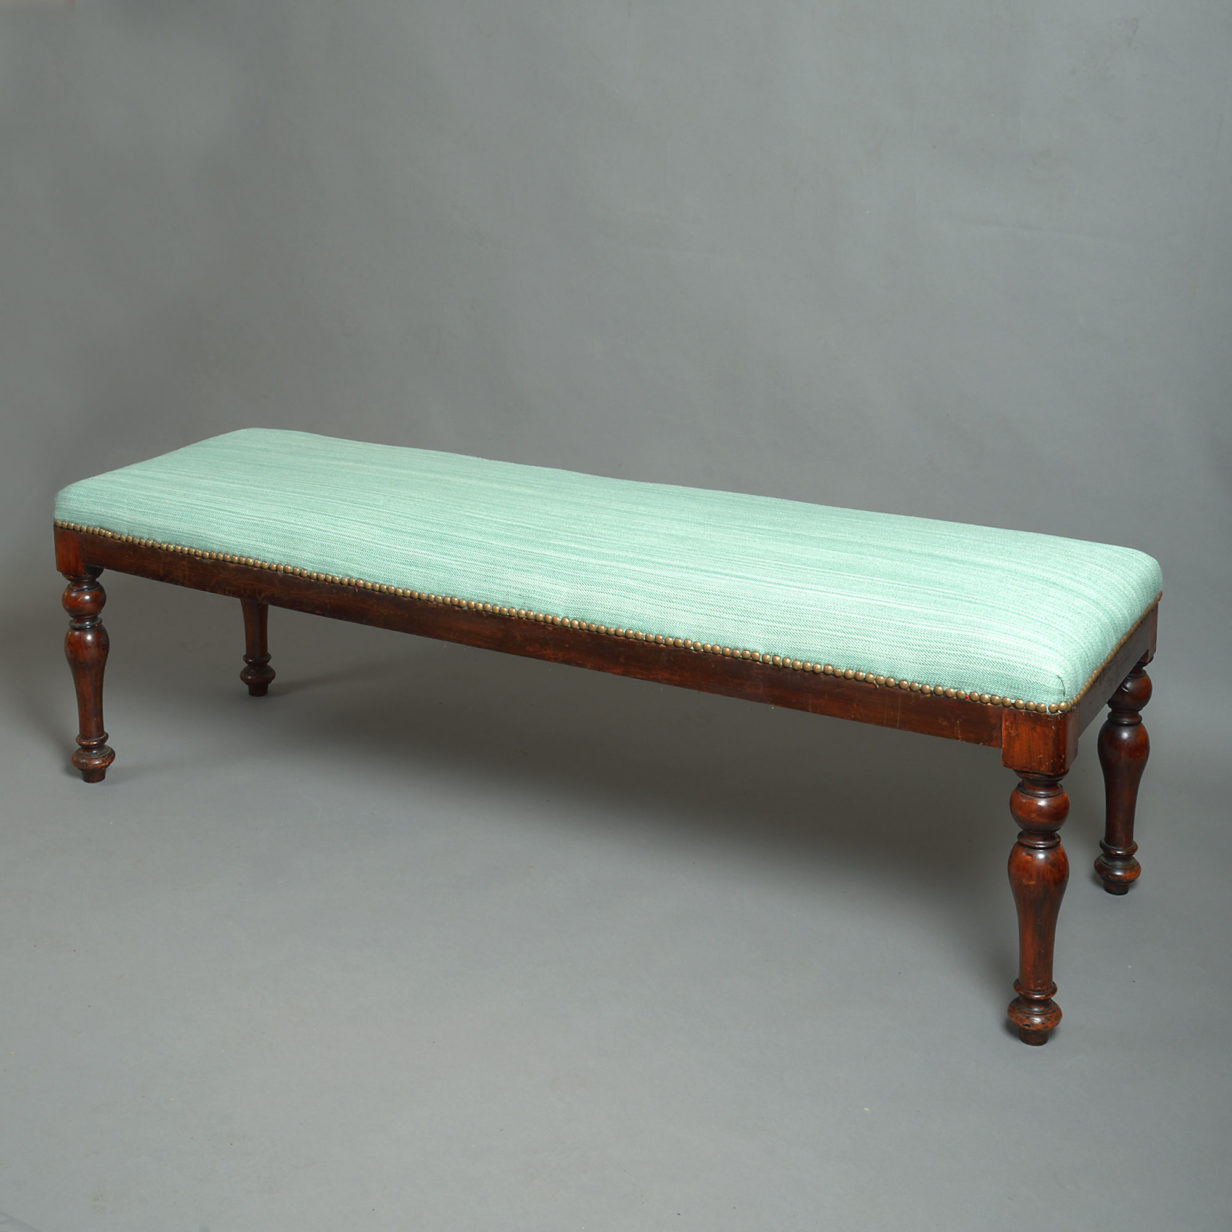 Early 19th century william iv period mahogany long stool